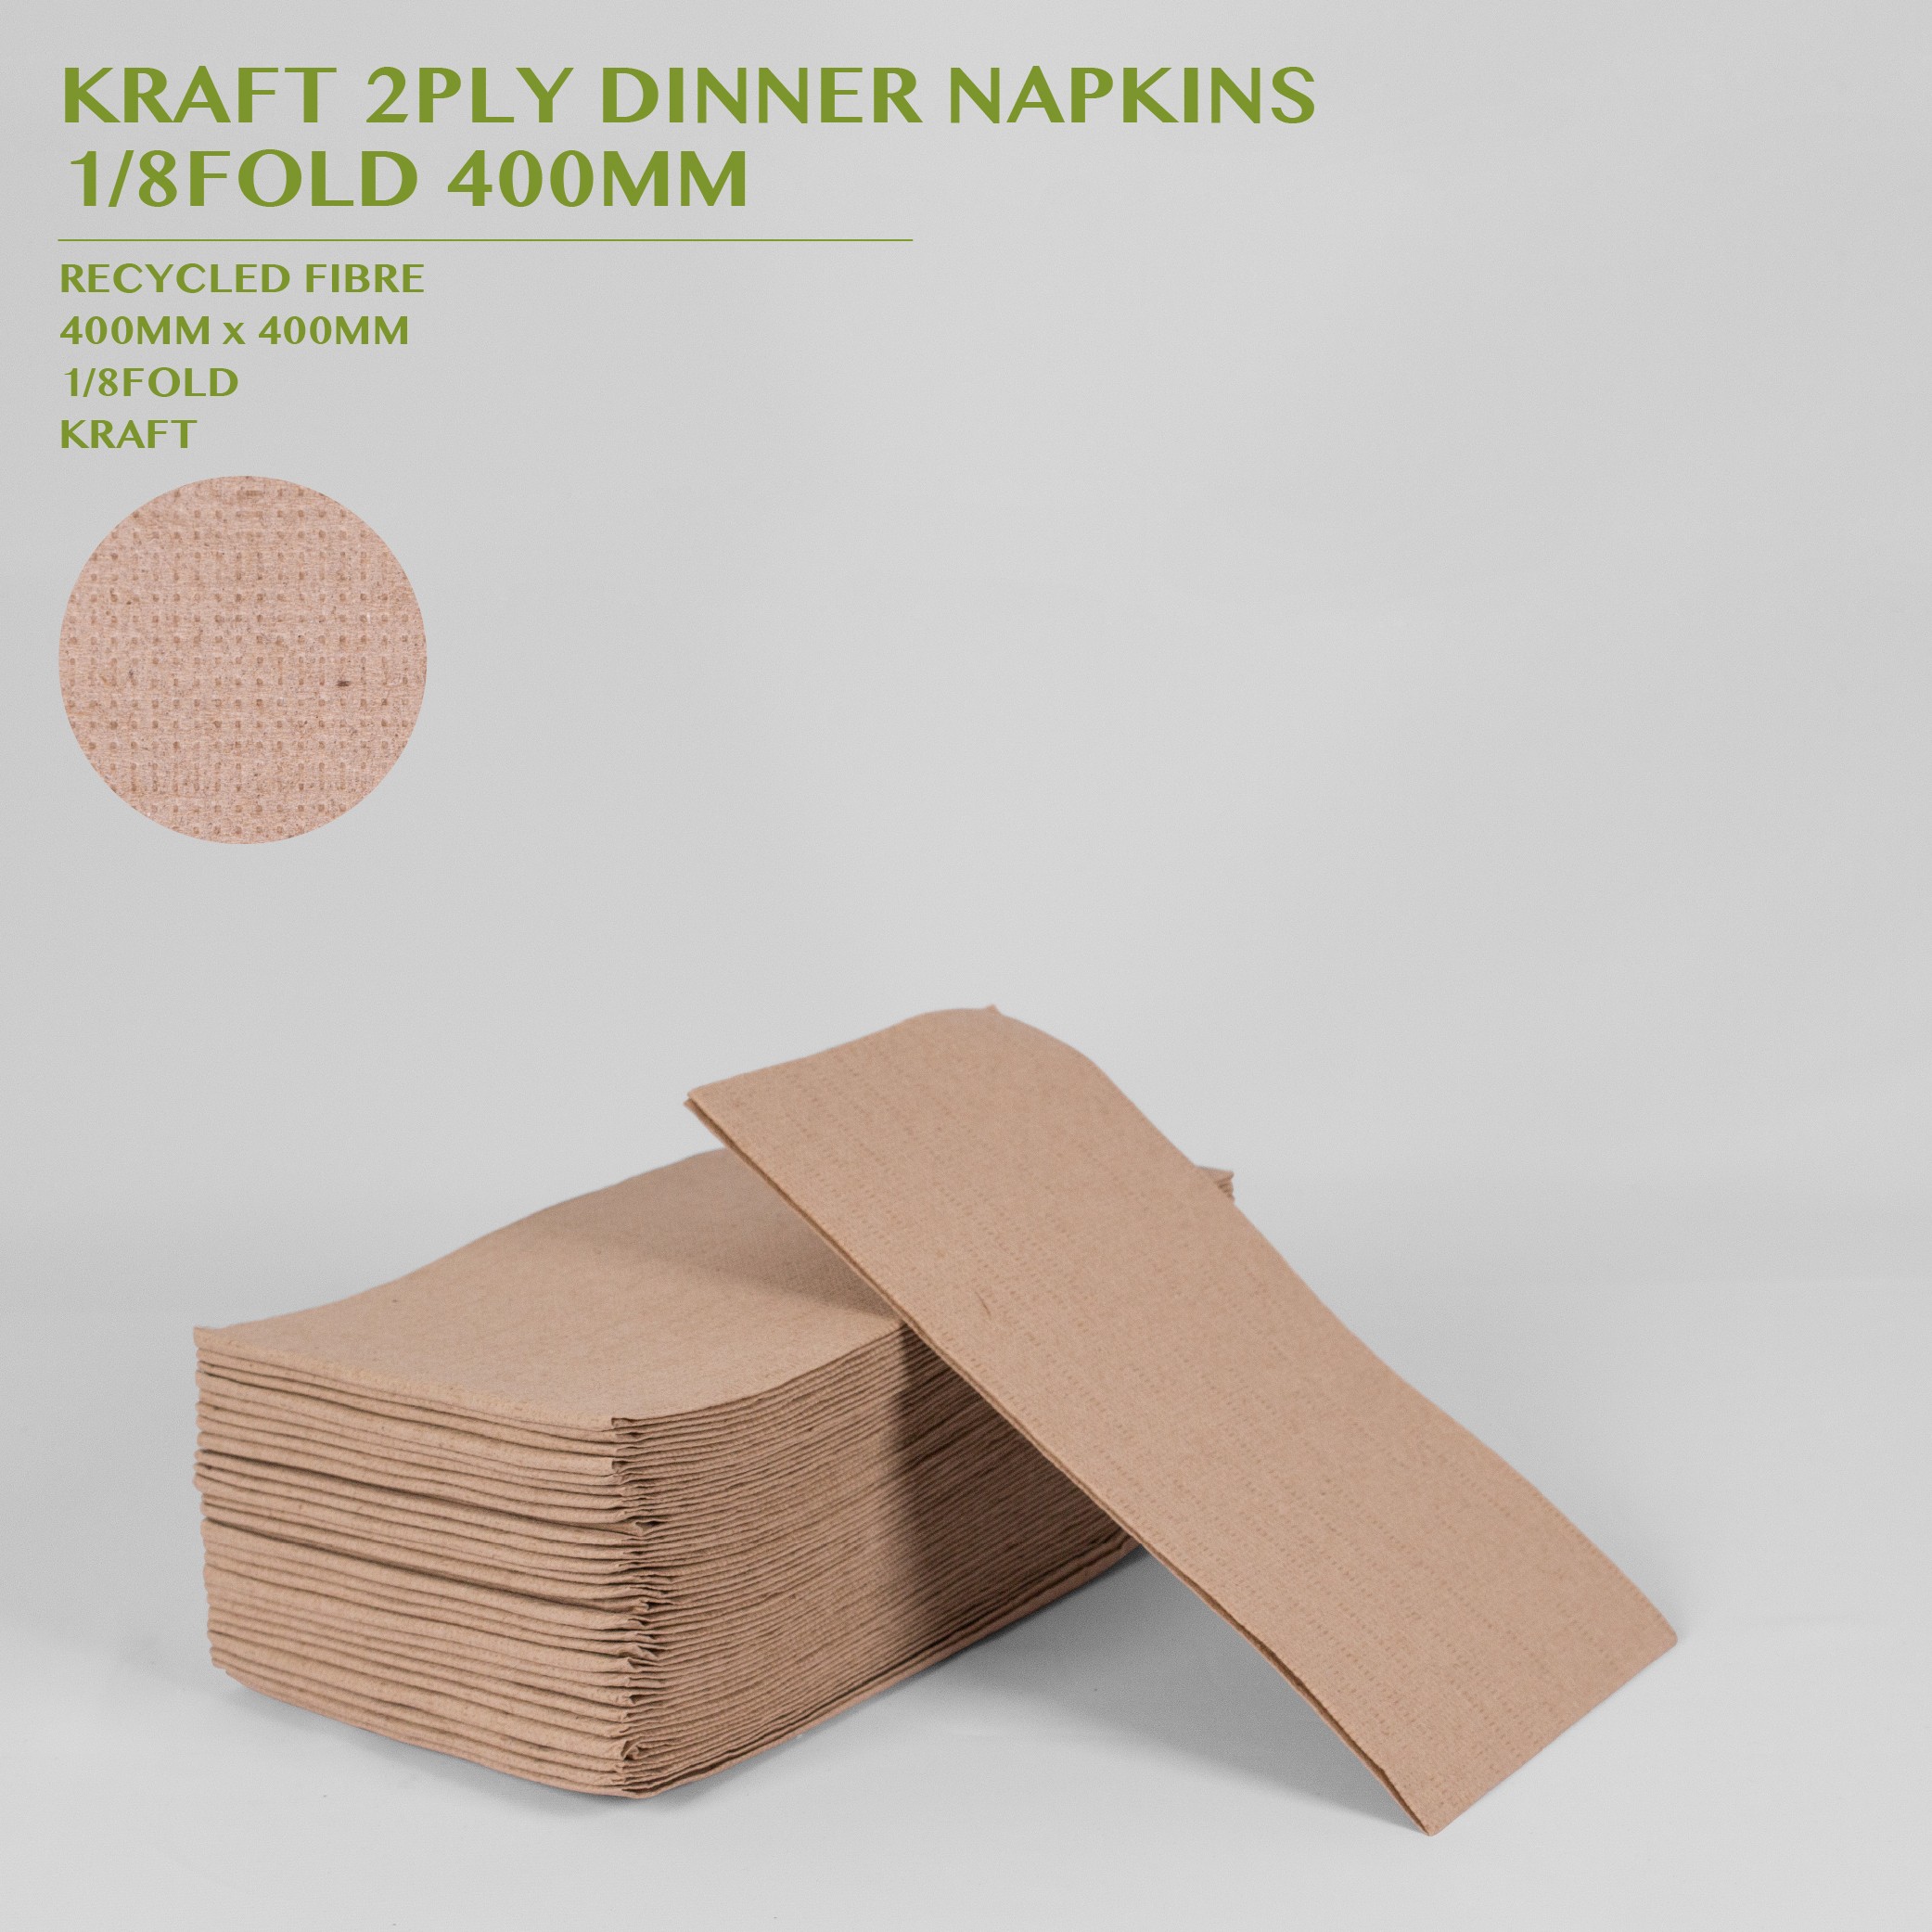 PRE-ORDER KRAFT 2PLY DINNER NAPKINS  1/8FOLD 400MM 100PACK